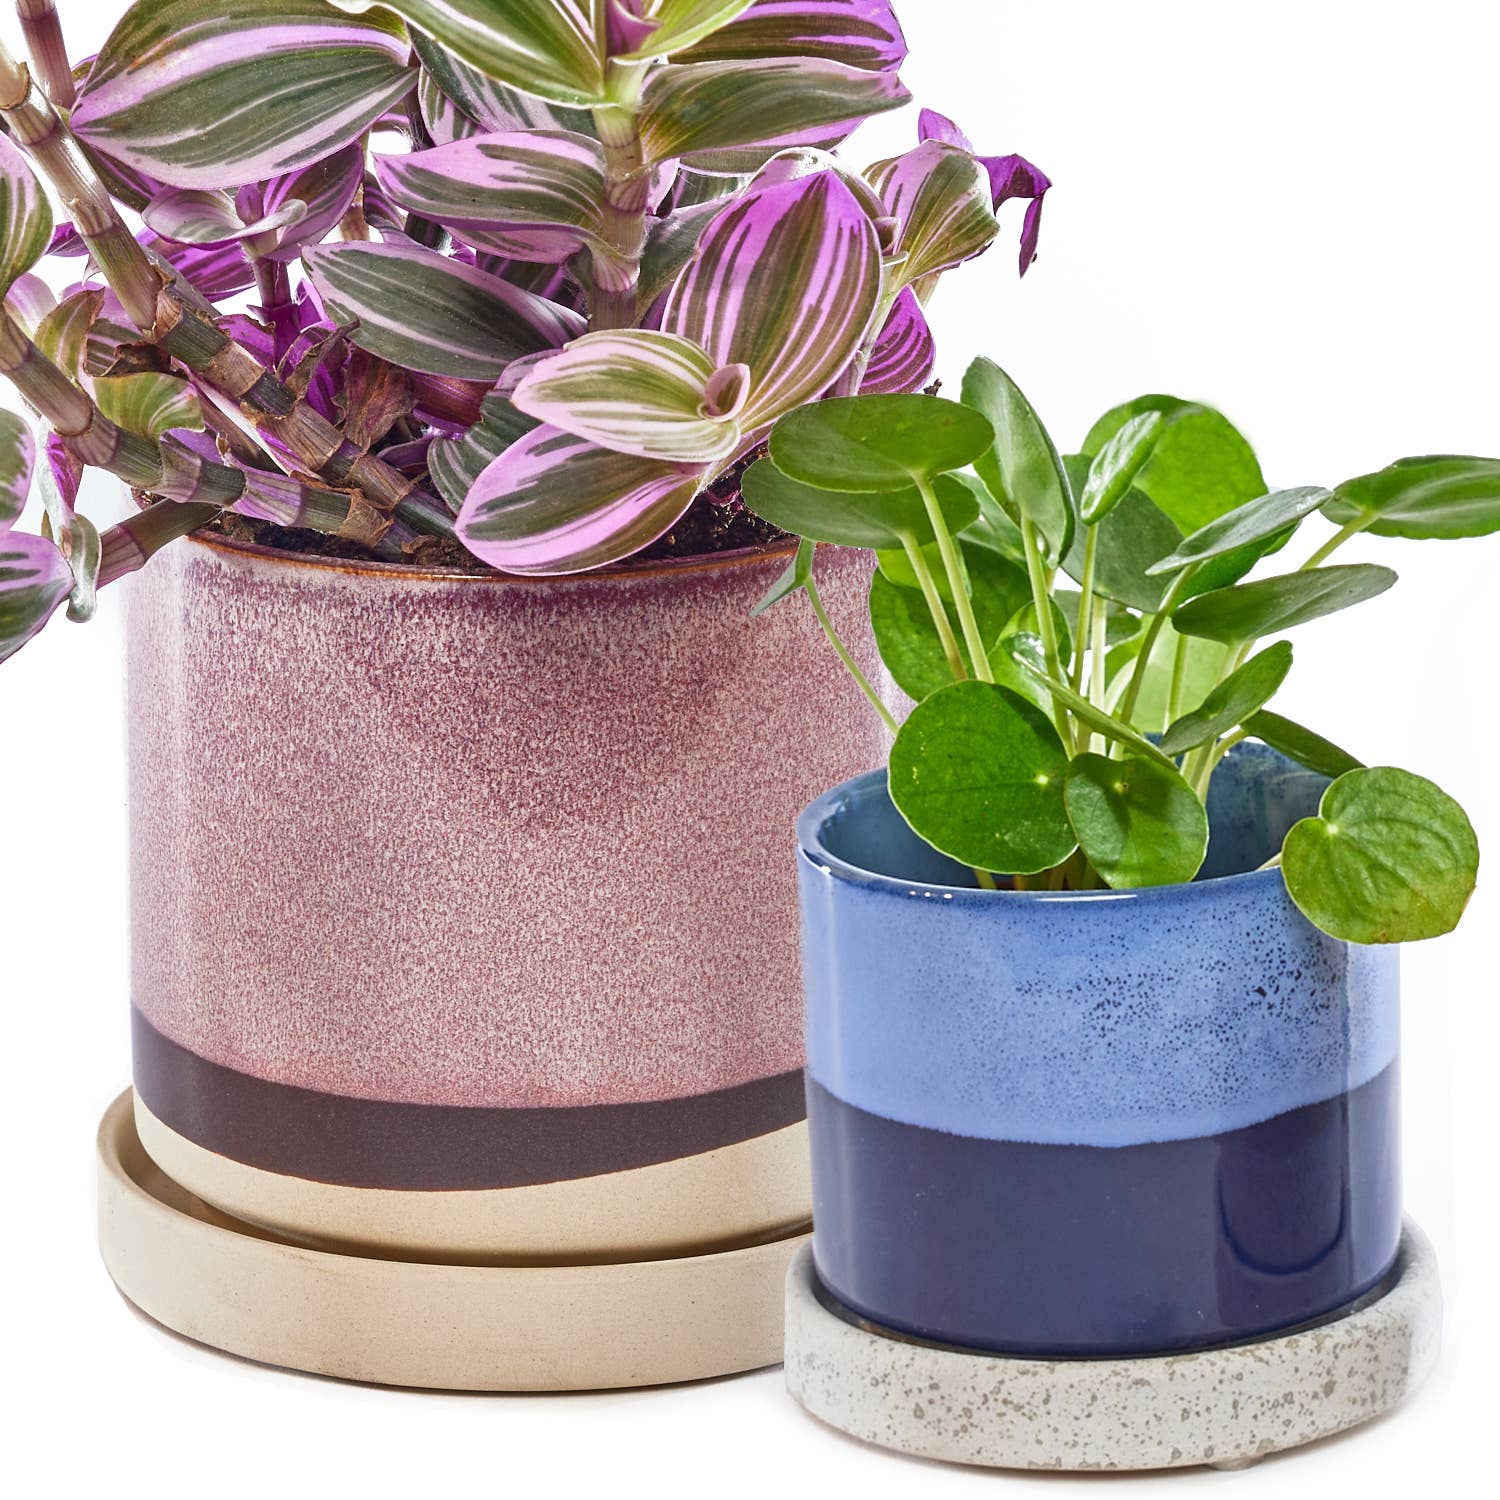 Chive - Minute Ceramic Plant Pots Indoor: Cosmos / 3"